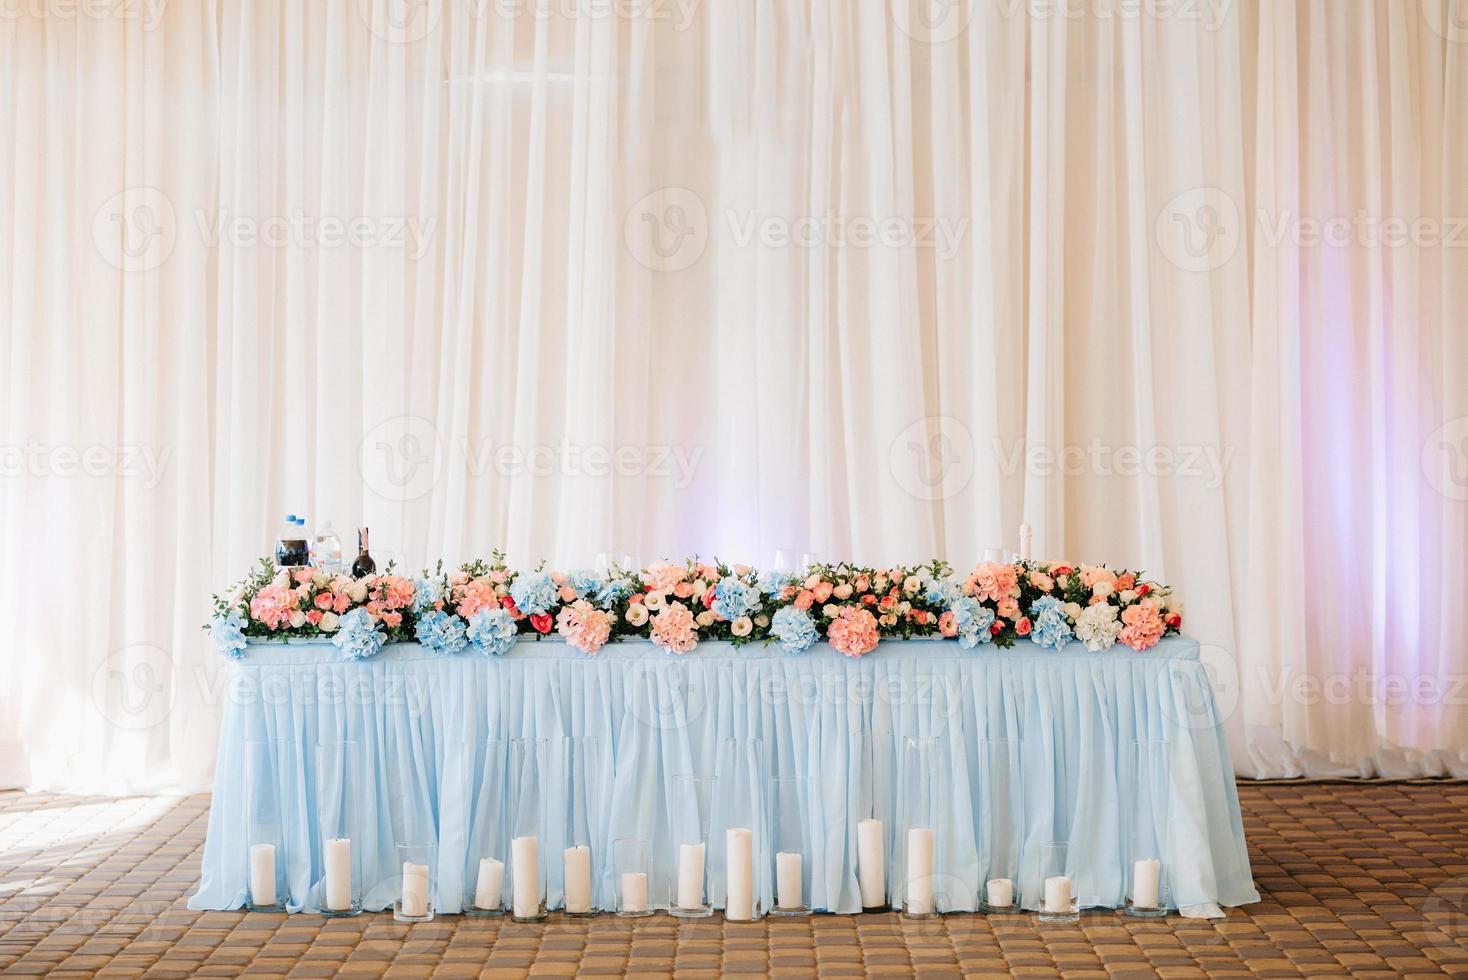 Bankettsaal für Hochzeiten mit dekorativen Elementen foto